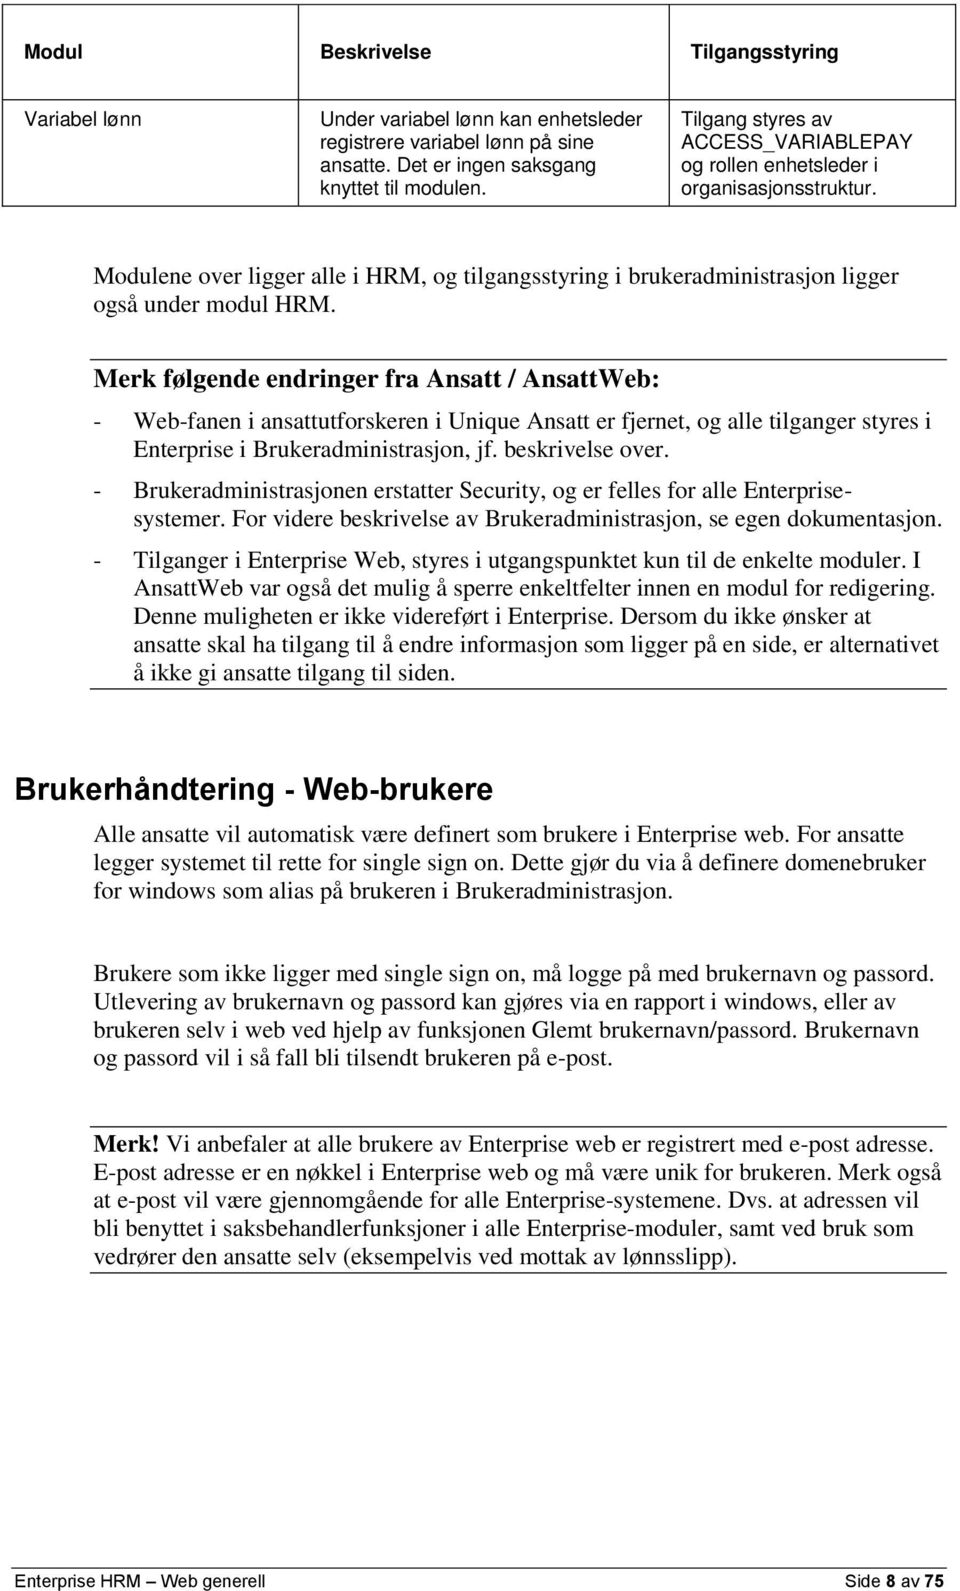 Merk følgende endringer fra Ansatt / AnsattWeb: - Web-fanen i ansattutforskeren i Unique Ansatt er fjernet, og alle tilganger styres i Enterprise i Brukeradministrasjon, jf. beskrivelse over.